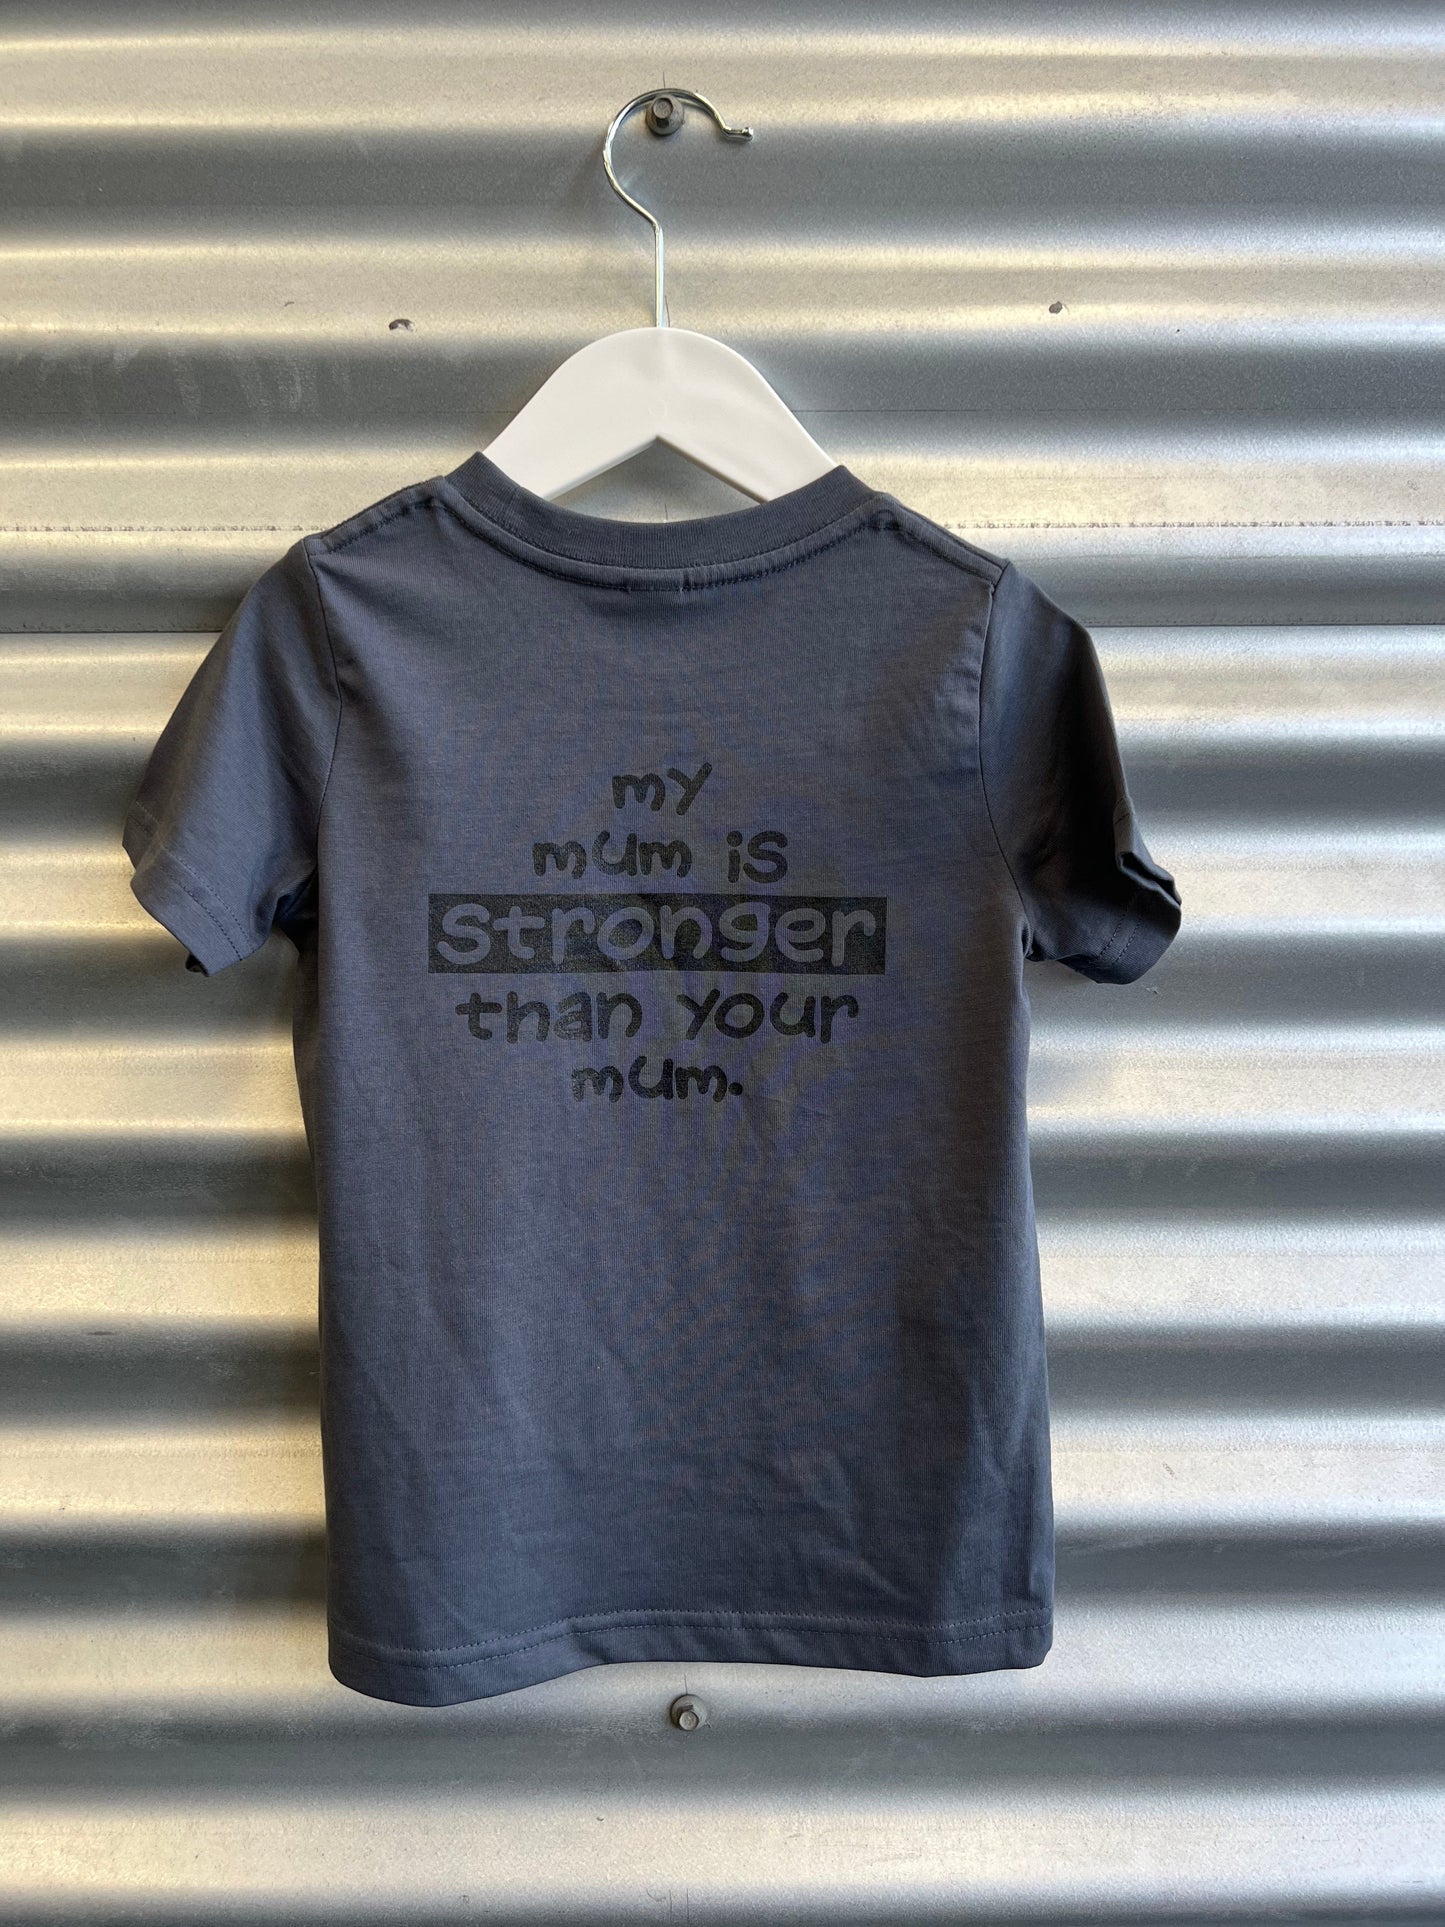 Powerhouse Gym Pro Shop Clothing Range 2 / Blue Kids T-Shirts